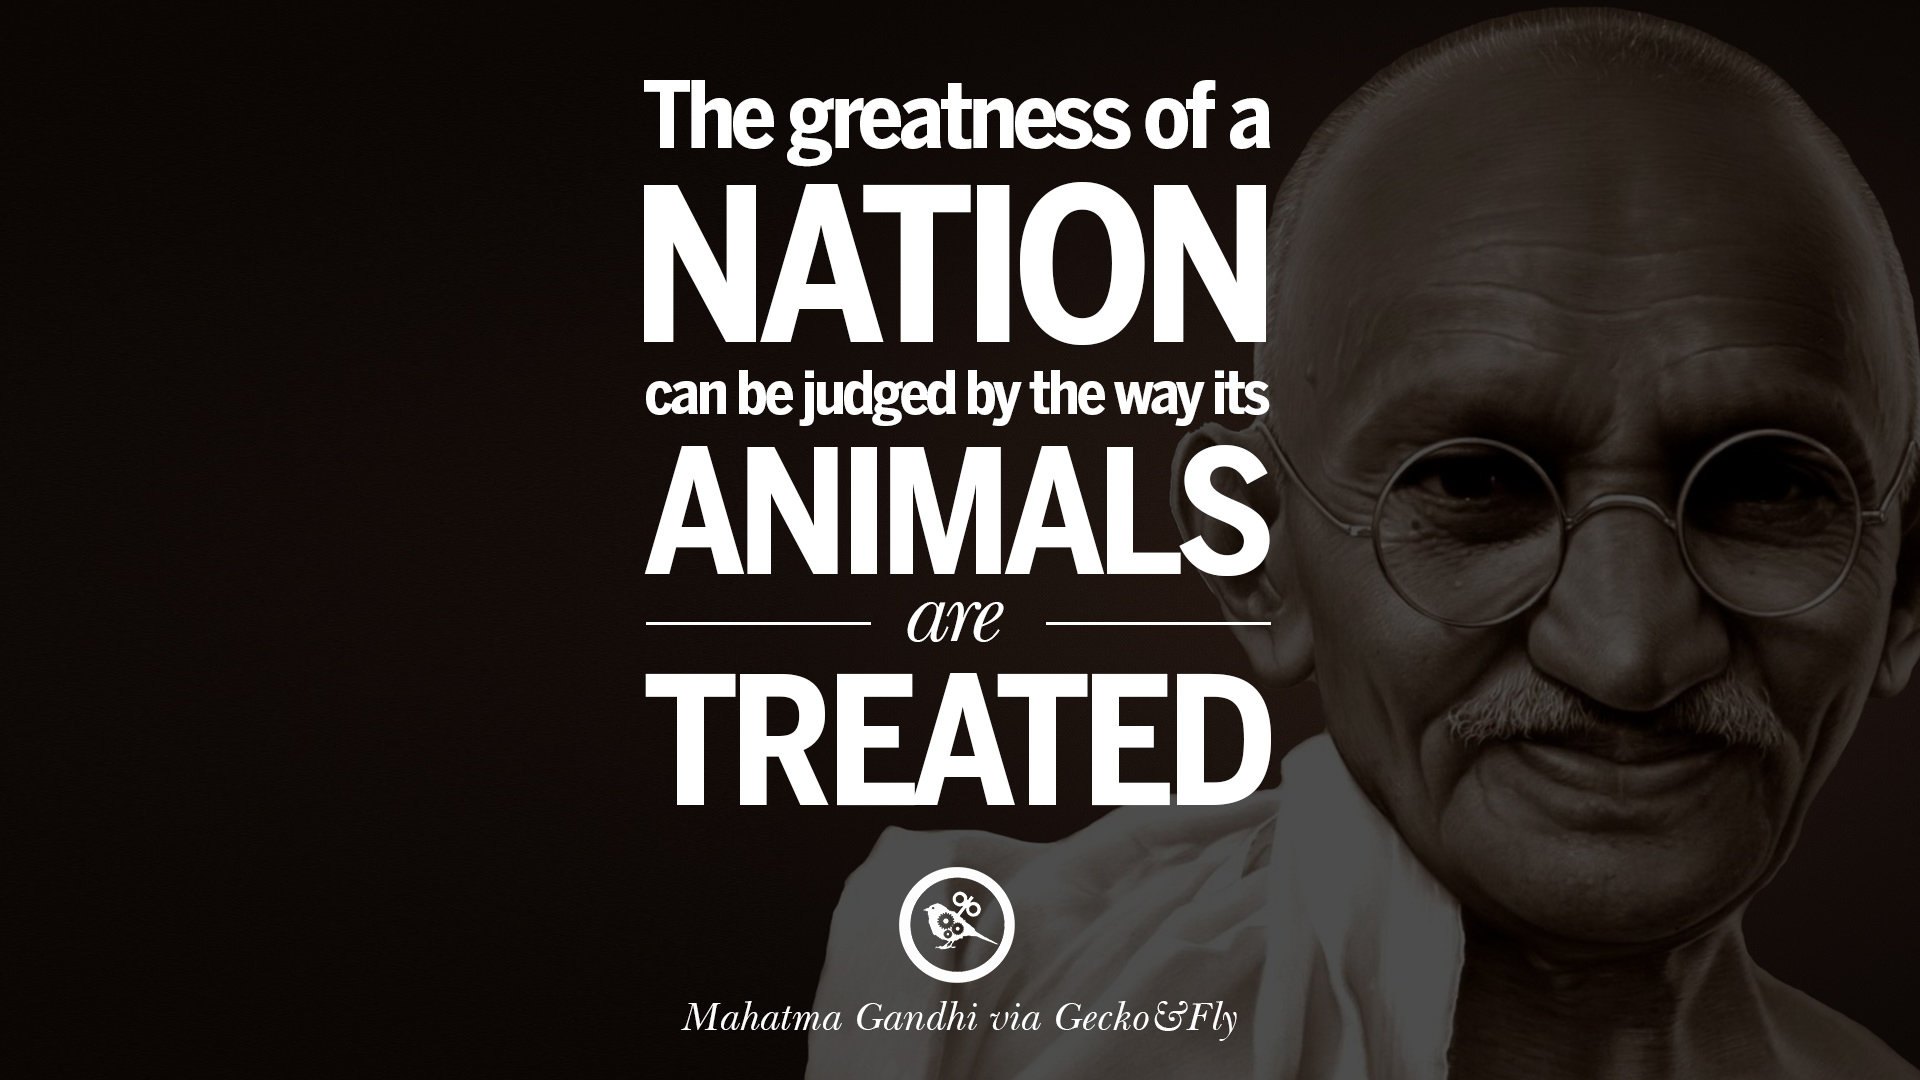 gandhi quotes animals